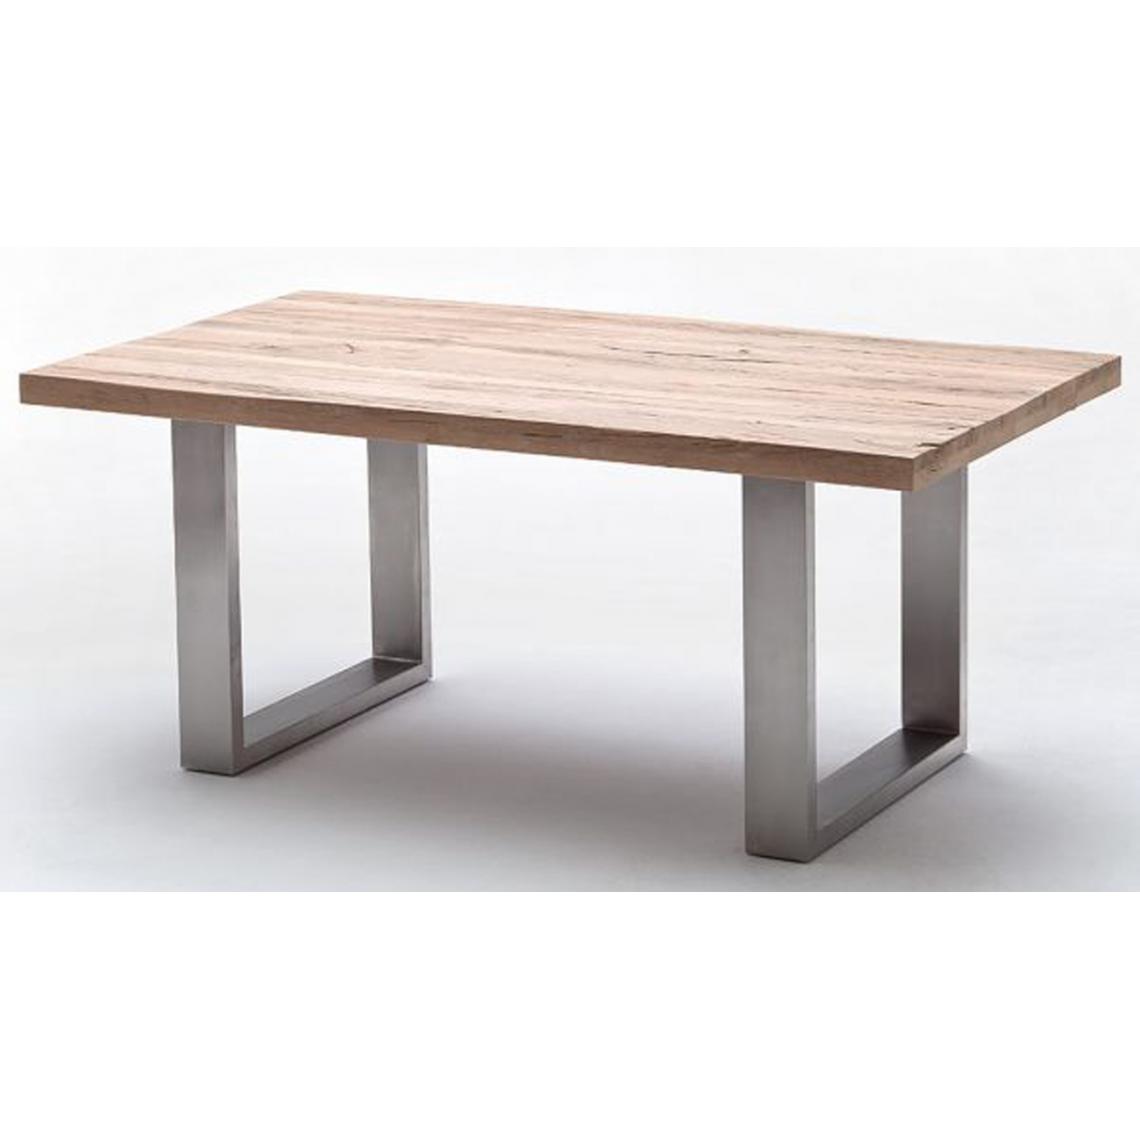 Pegane - Table à manger en chêne chaulé, laqué mat massif - L.220 x H.76 x P.100 cm -PEGANE- - Tables à manger